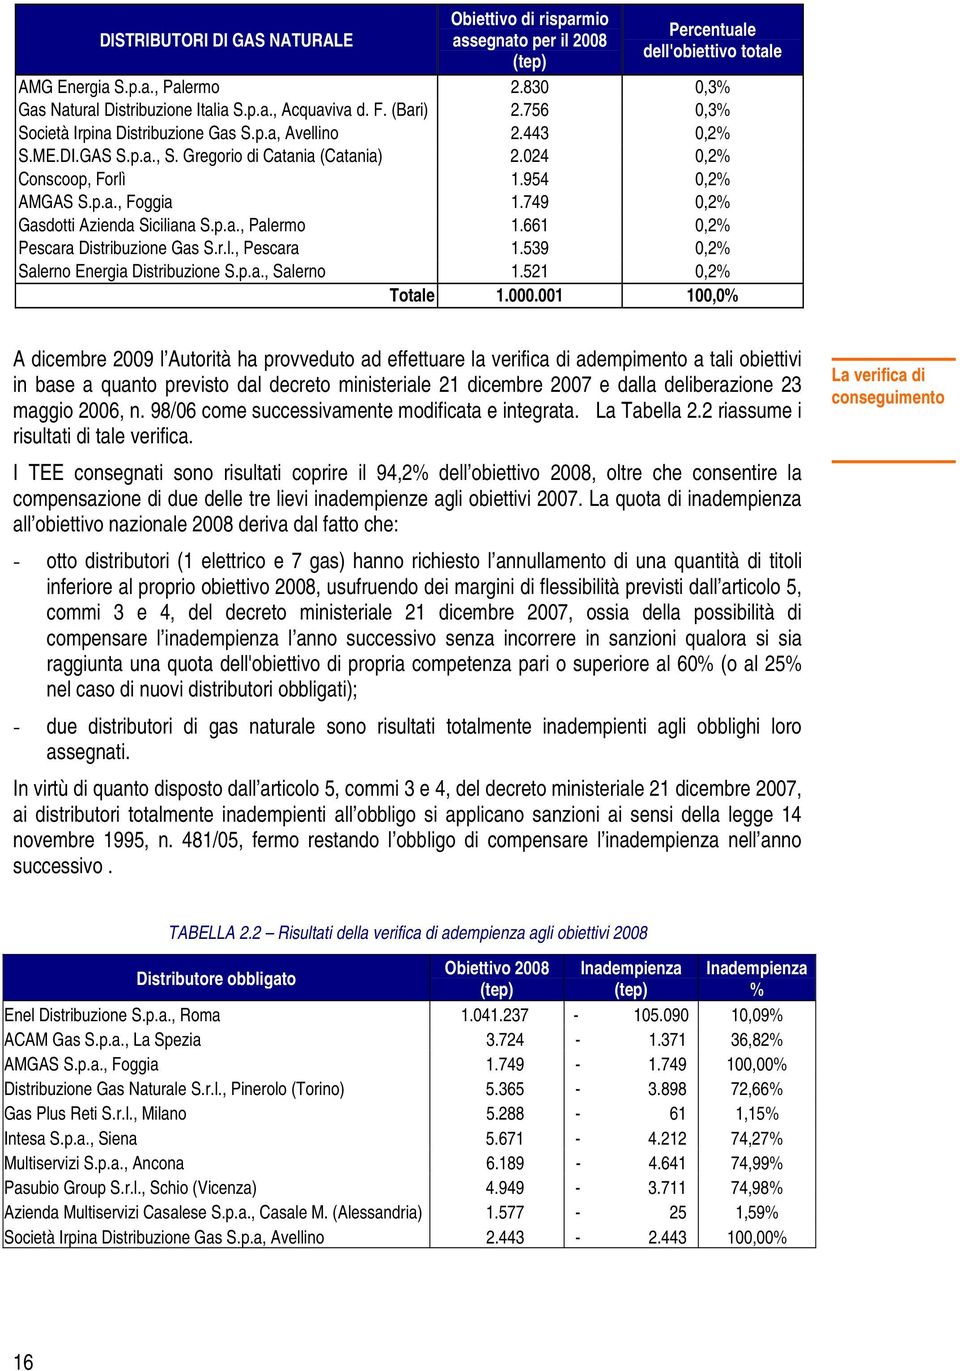 749 0,2% Gasdotti Azienda Siciliana S.p.a., Palermo 1.661 0,2% Pescara Distribuzione Gas S.r.l., Pescara 1.539 0,2% Salerno Energia Distribuzione S.p.a., Salerno 1.521 0,2% Totale 1.000.